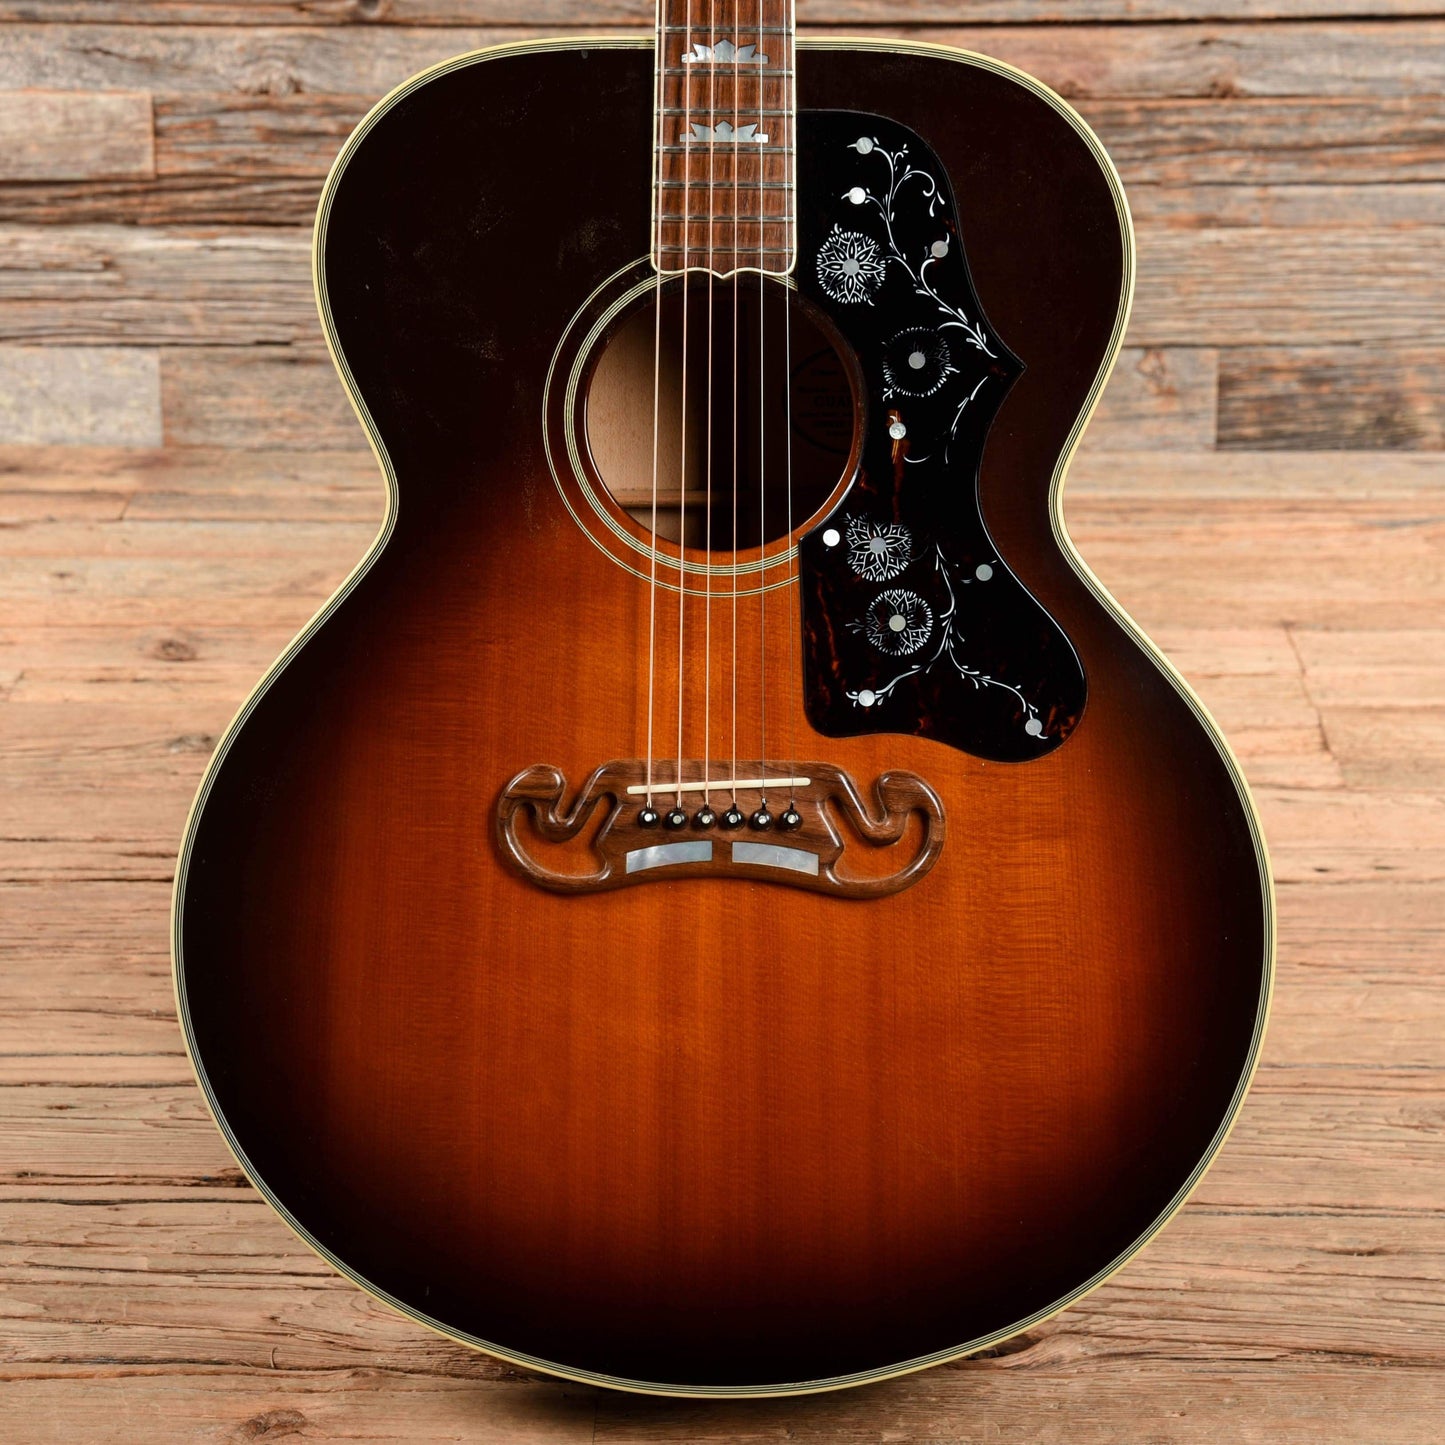 Gibson J-200 Sunburst 1991 Acoustic Guitars / Jumbo